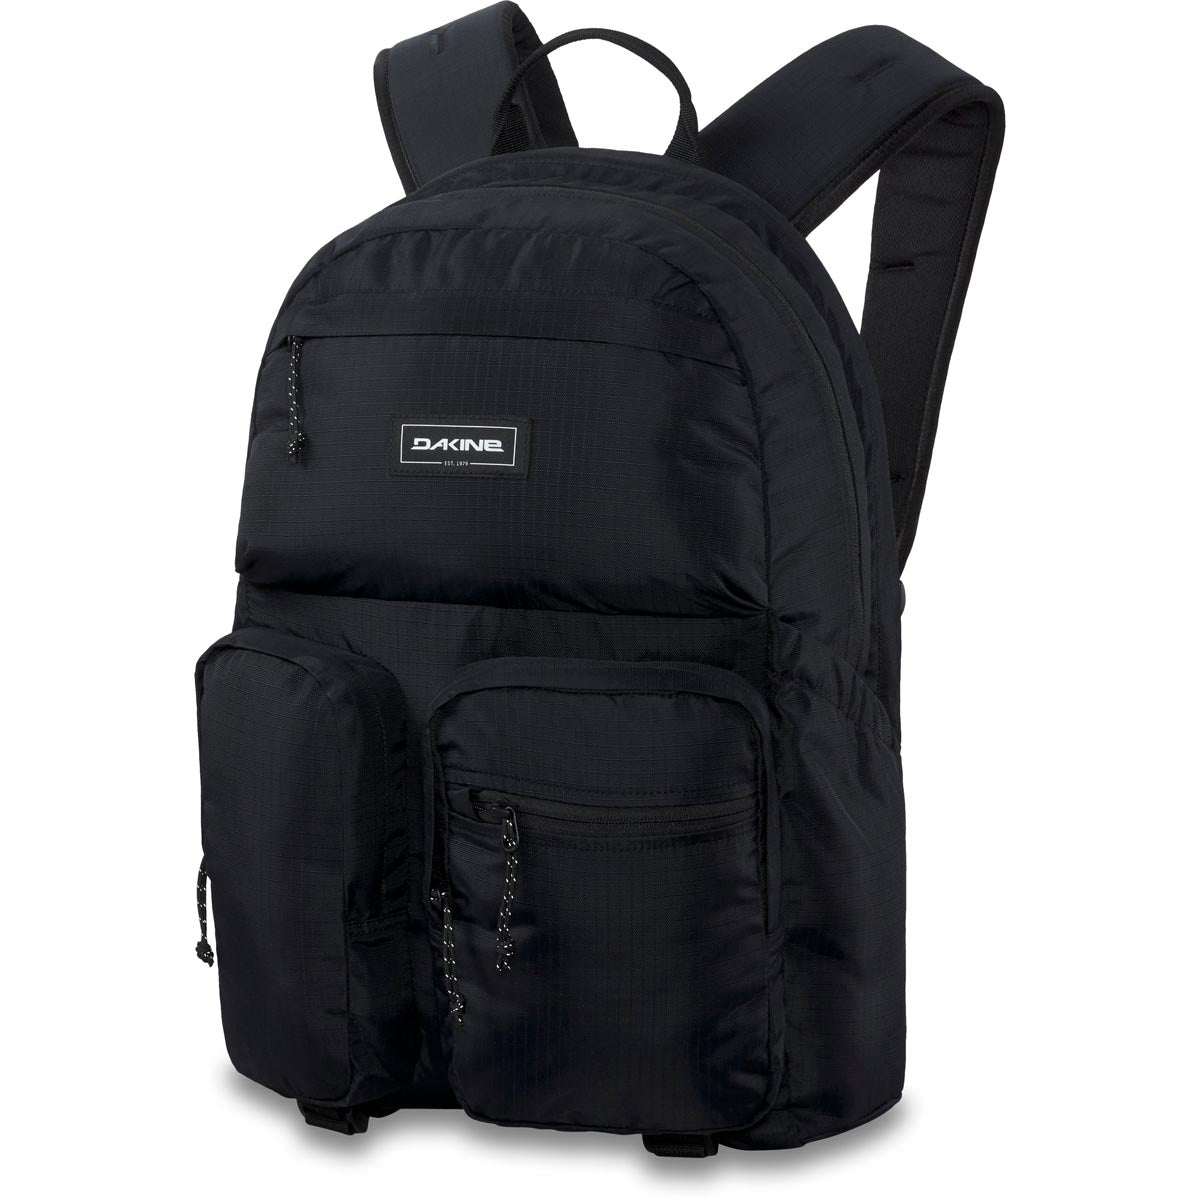 Dakine Method Dlx 28l Backpack - Black Ripstop image 1